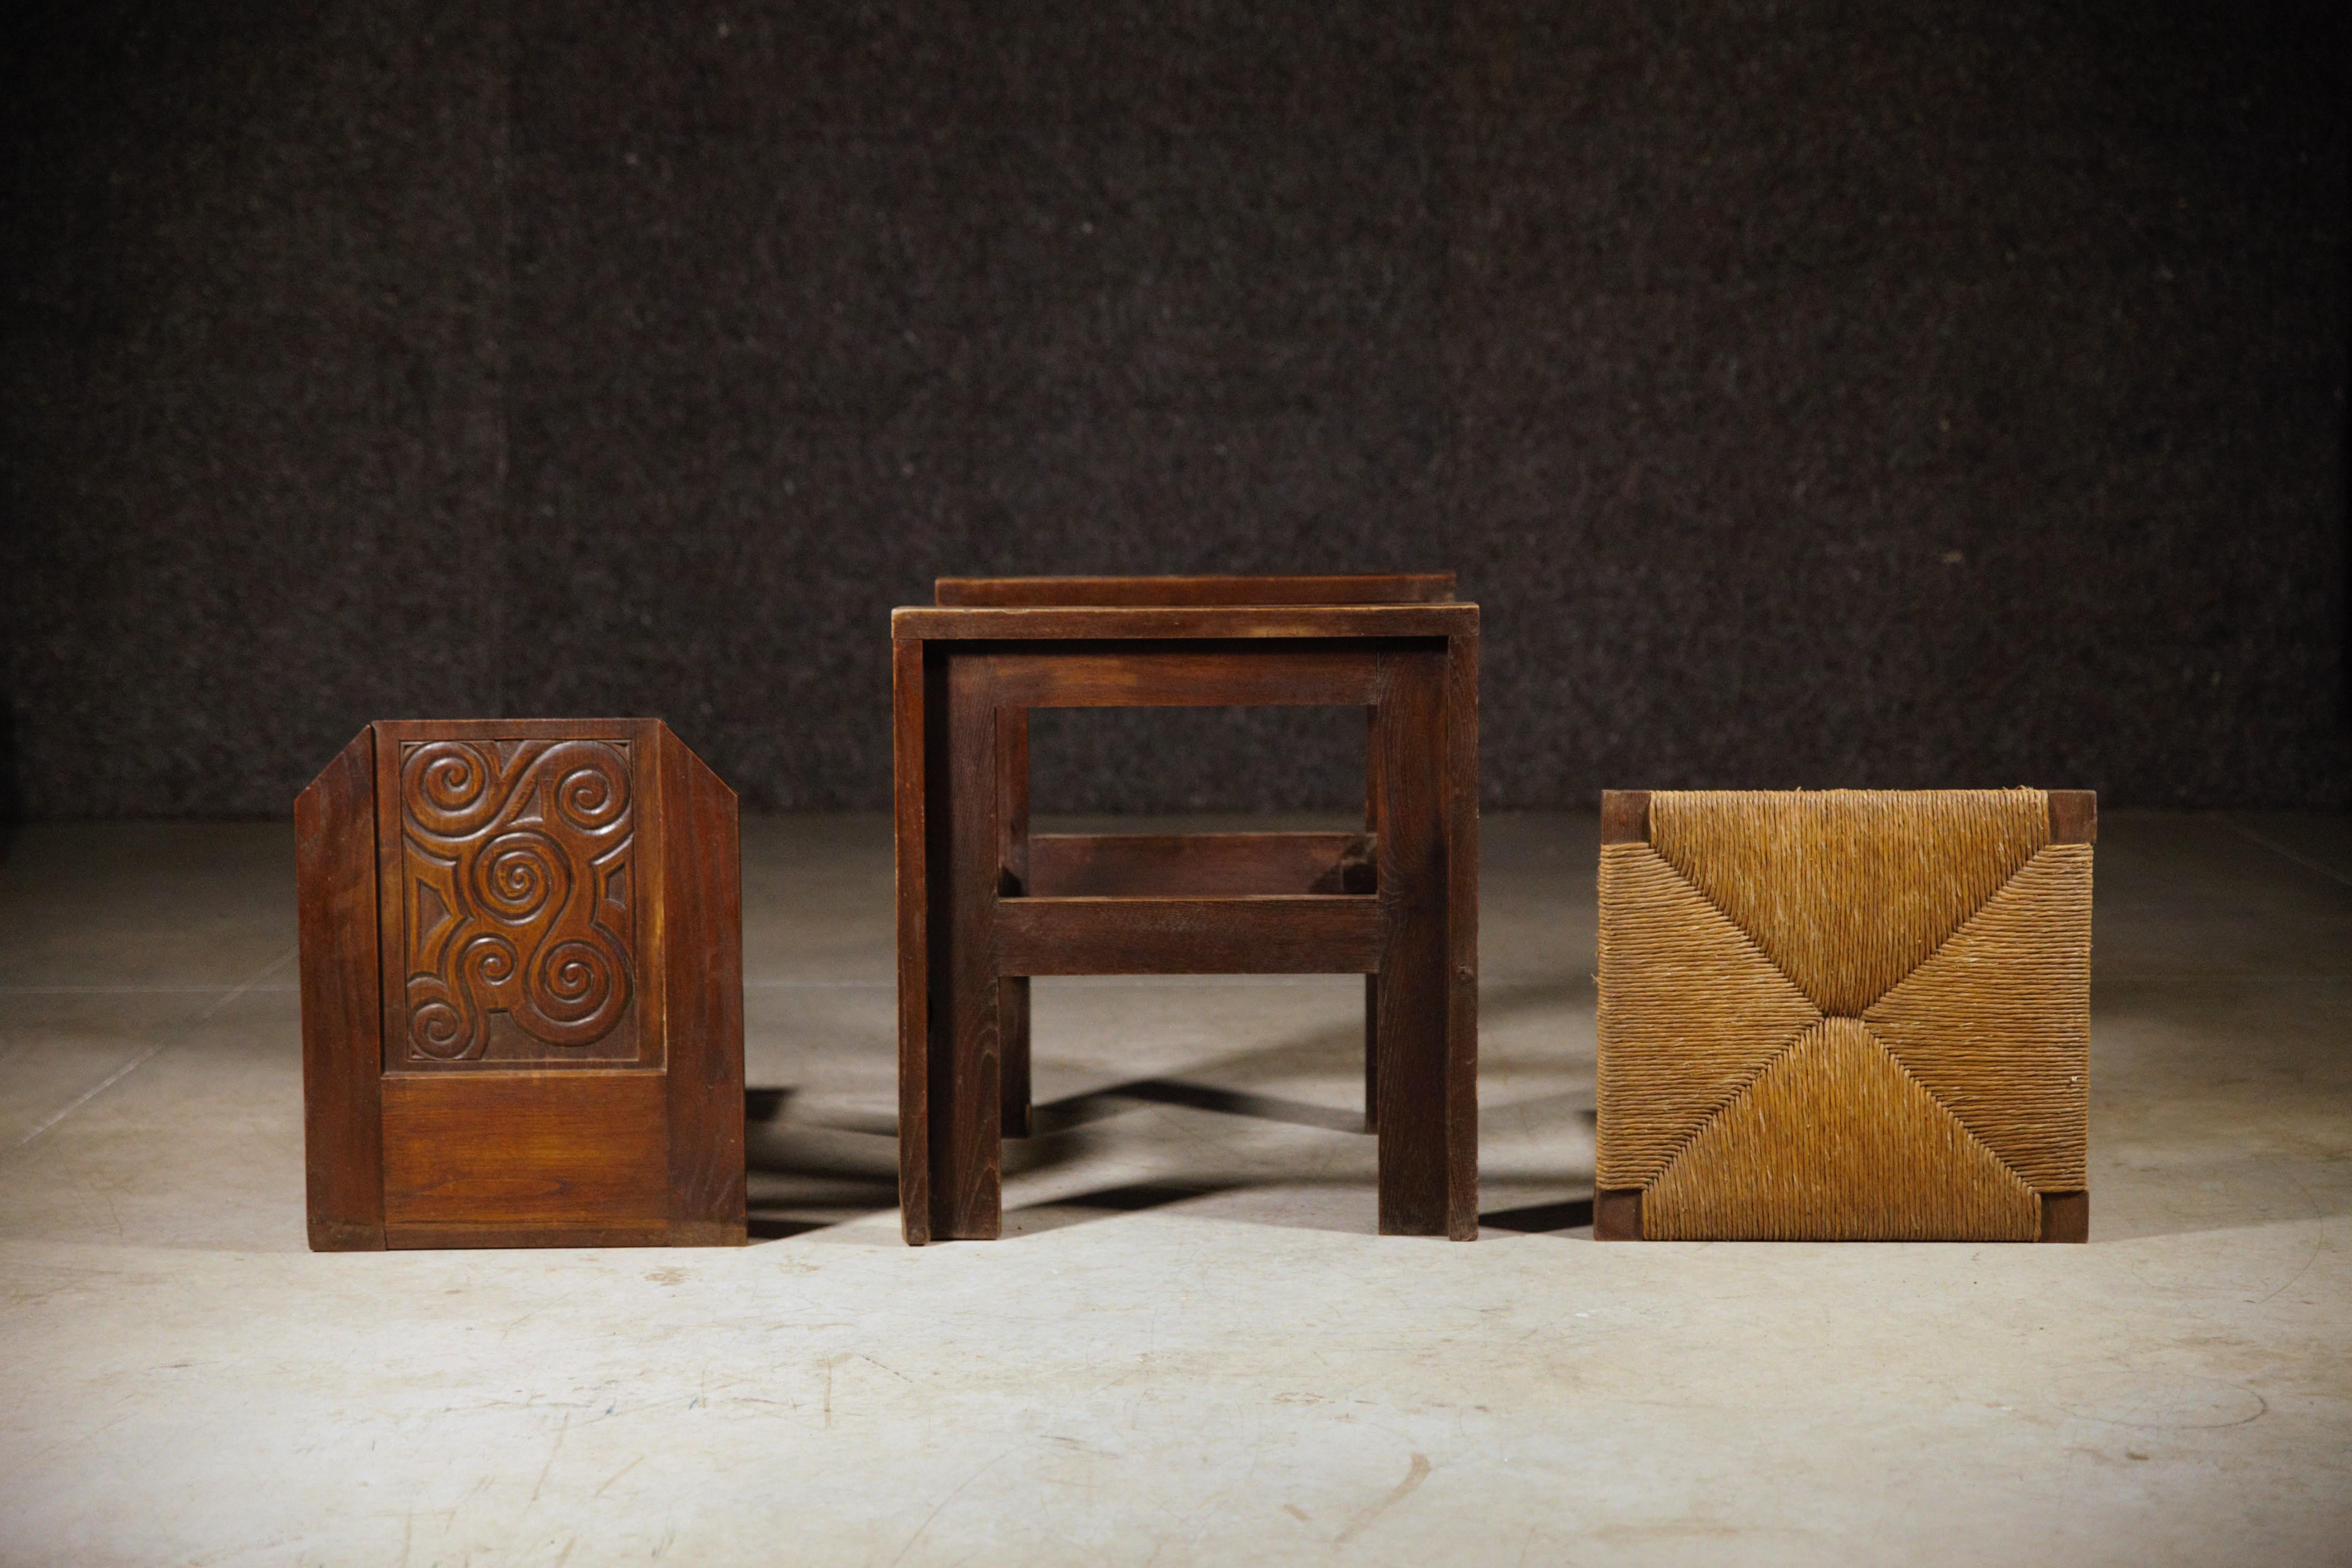 Ein seltenes Paar keltischer Sessel von Joseph Savina.

Mit antik-keltischer Zeichnung.

Geschnitzte Eiche und originale Binsen.